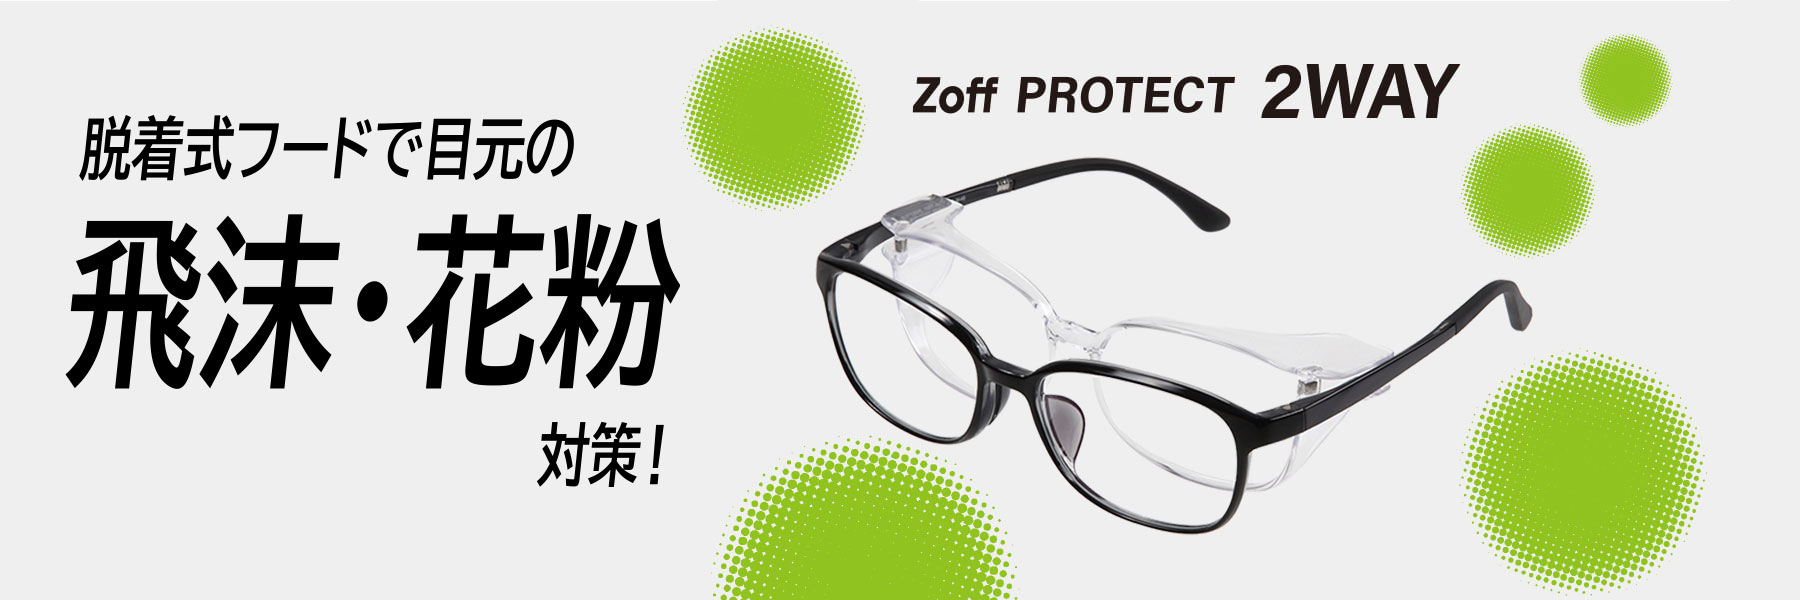 Zoff PROTECT 2WAY